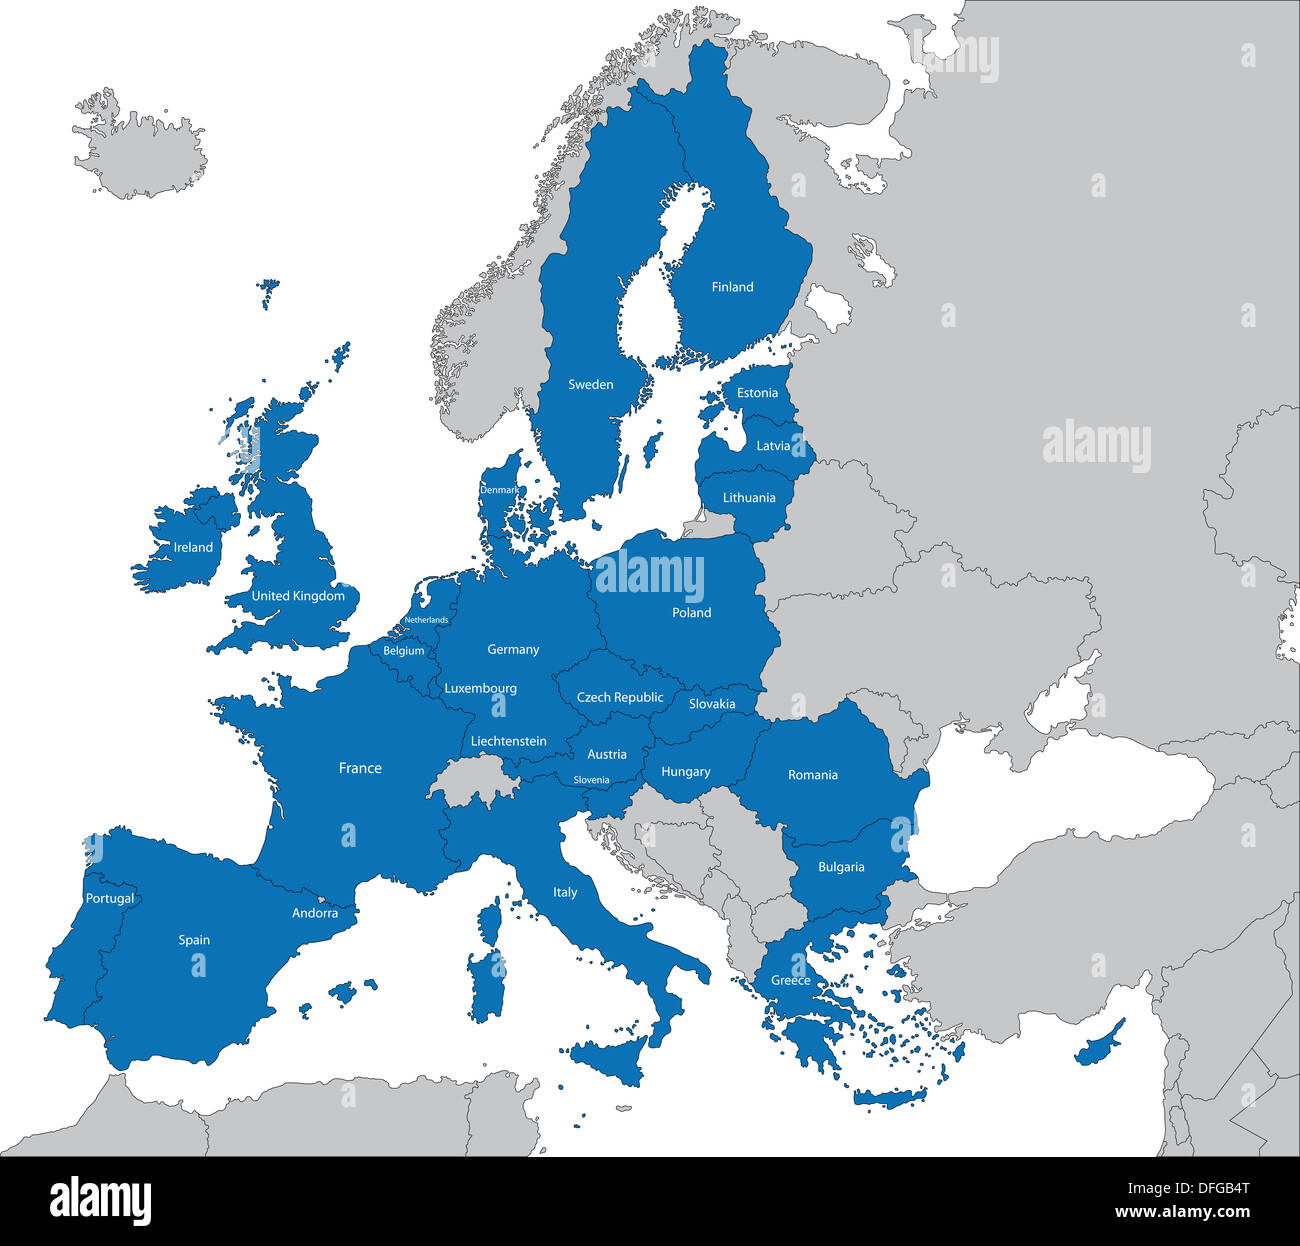 European Union map Stock Photo